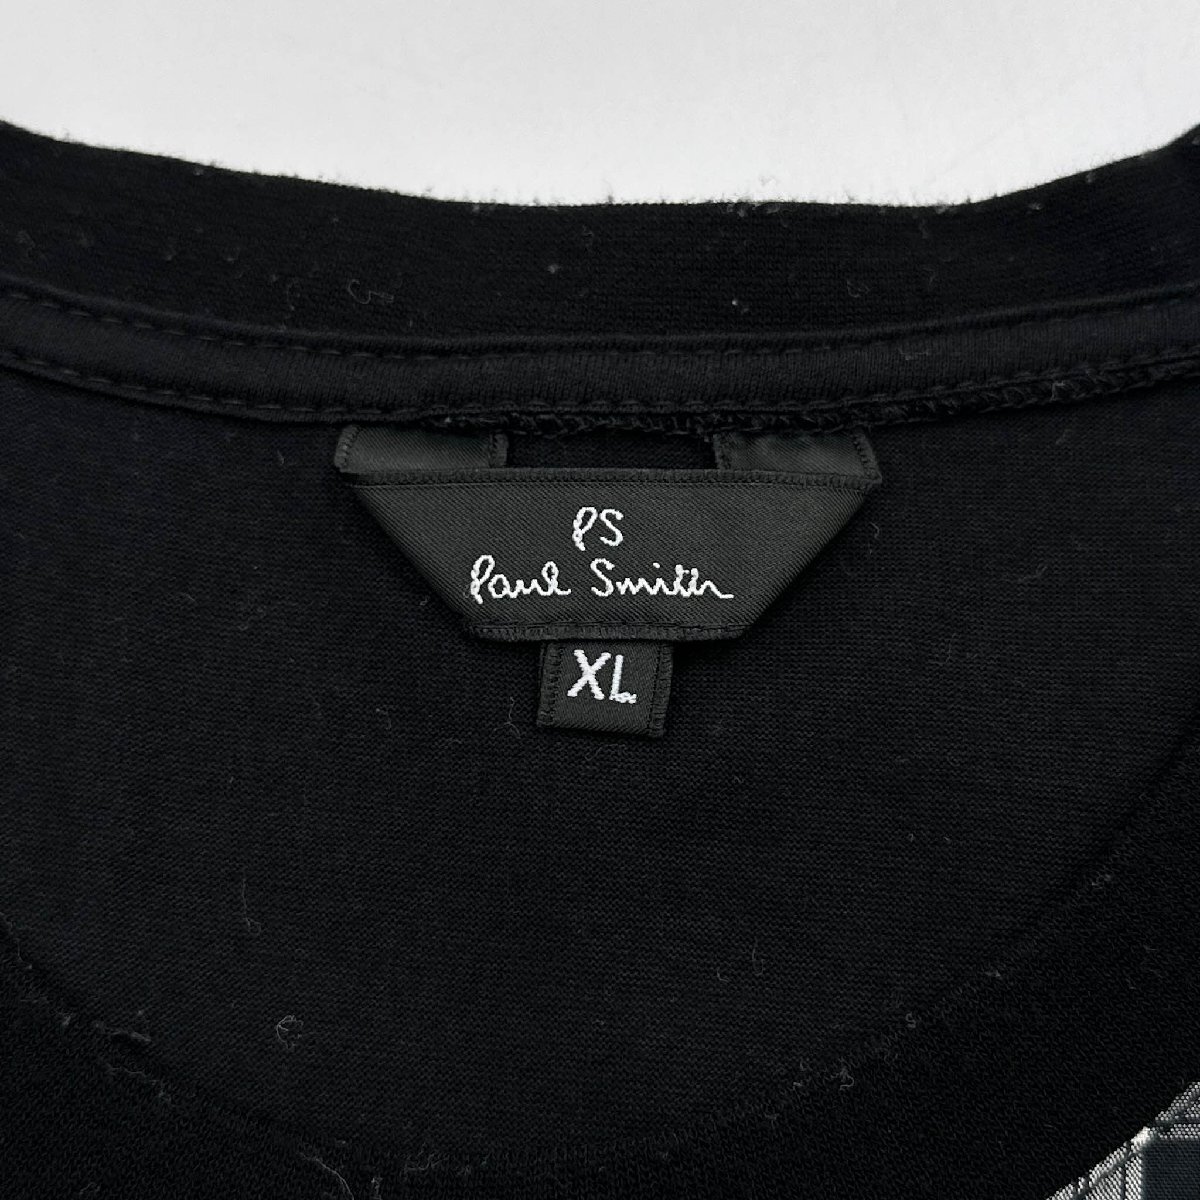 PS Paul Smith ポールスミス チェック柄 切替 半袖 Tシャツ カットソー XL/黒/ブラック/メンズ/ジョイックスコーポレーション/日本製_画像4